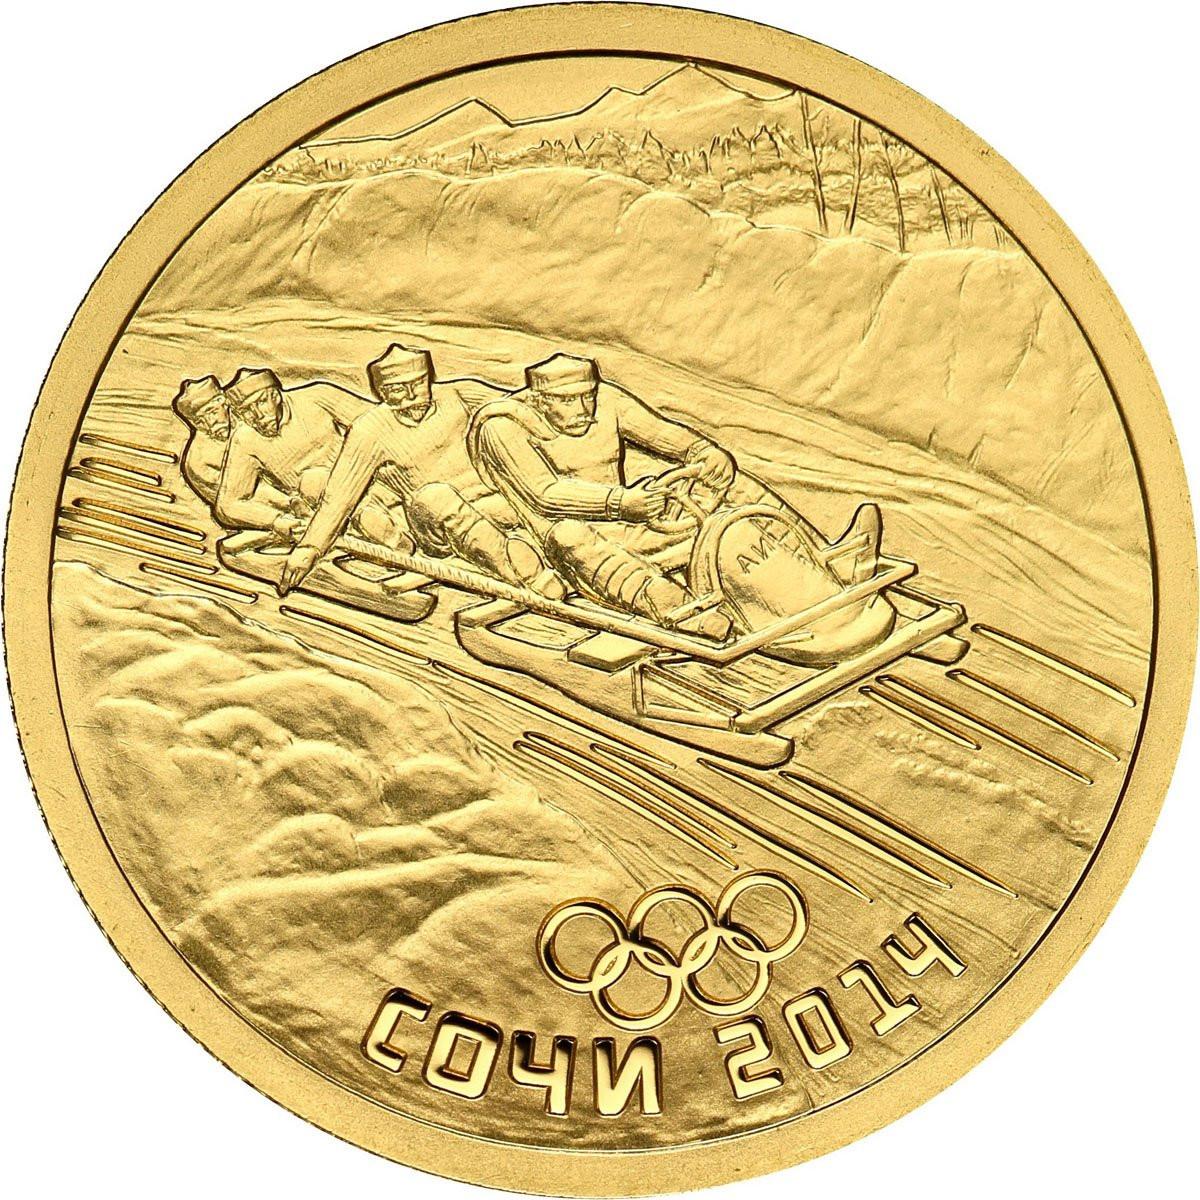 Rosja. 50 Rubli 2014 Olimpiada Soczi - Zjazd na Bobsleju - 1/4 uncji złota